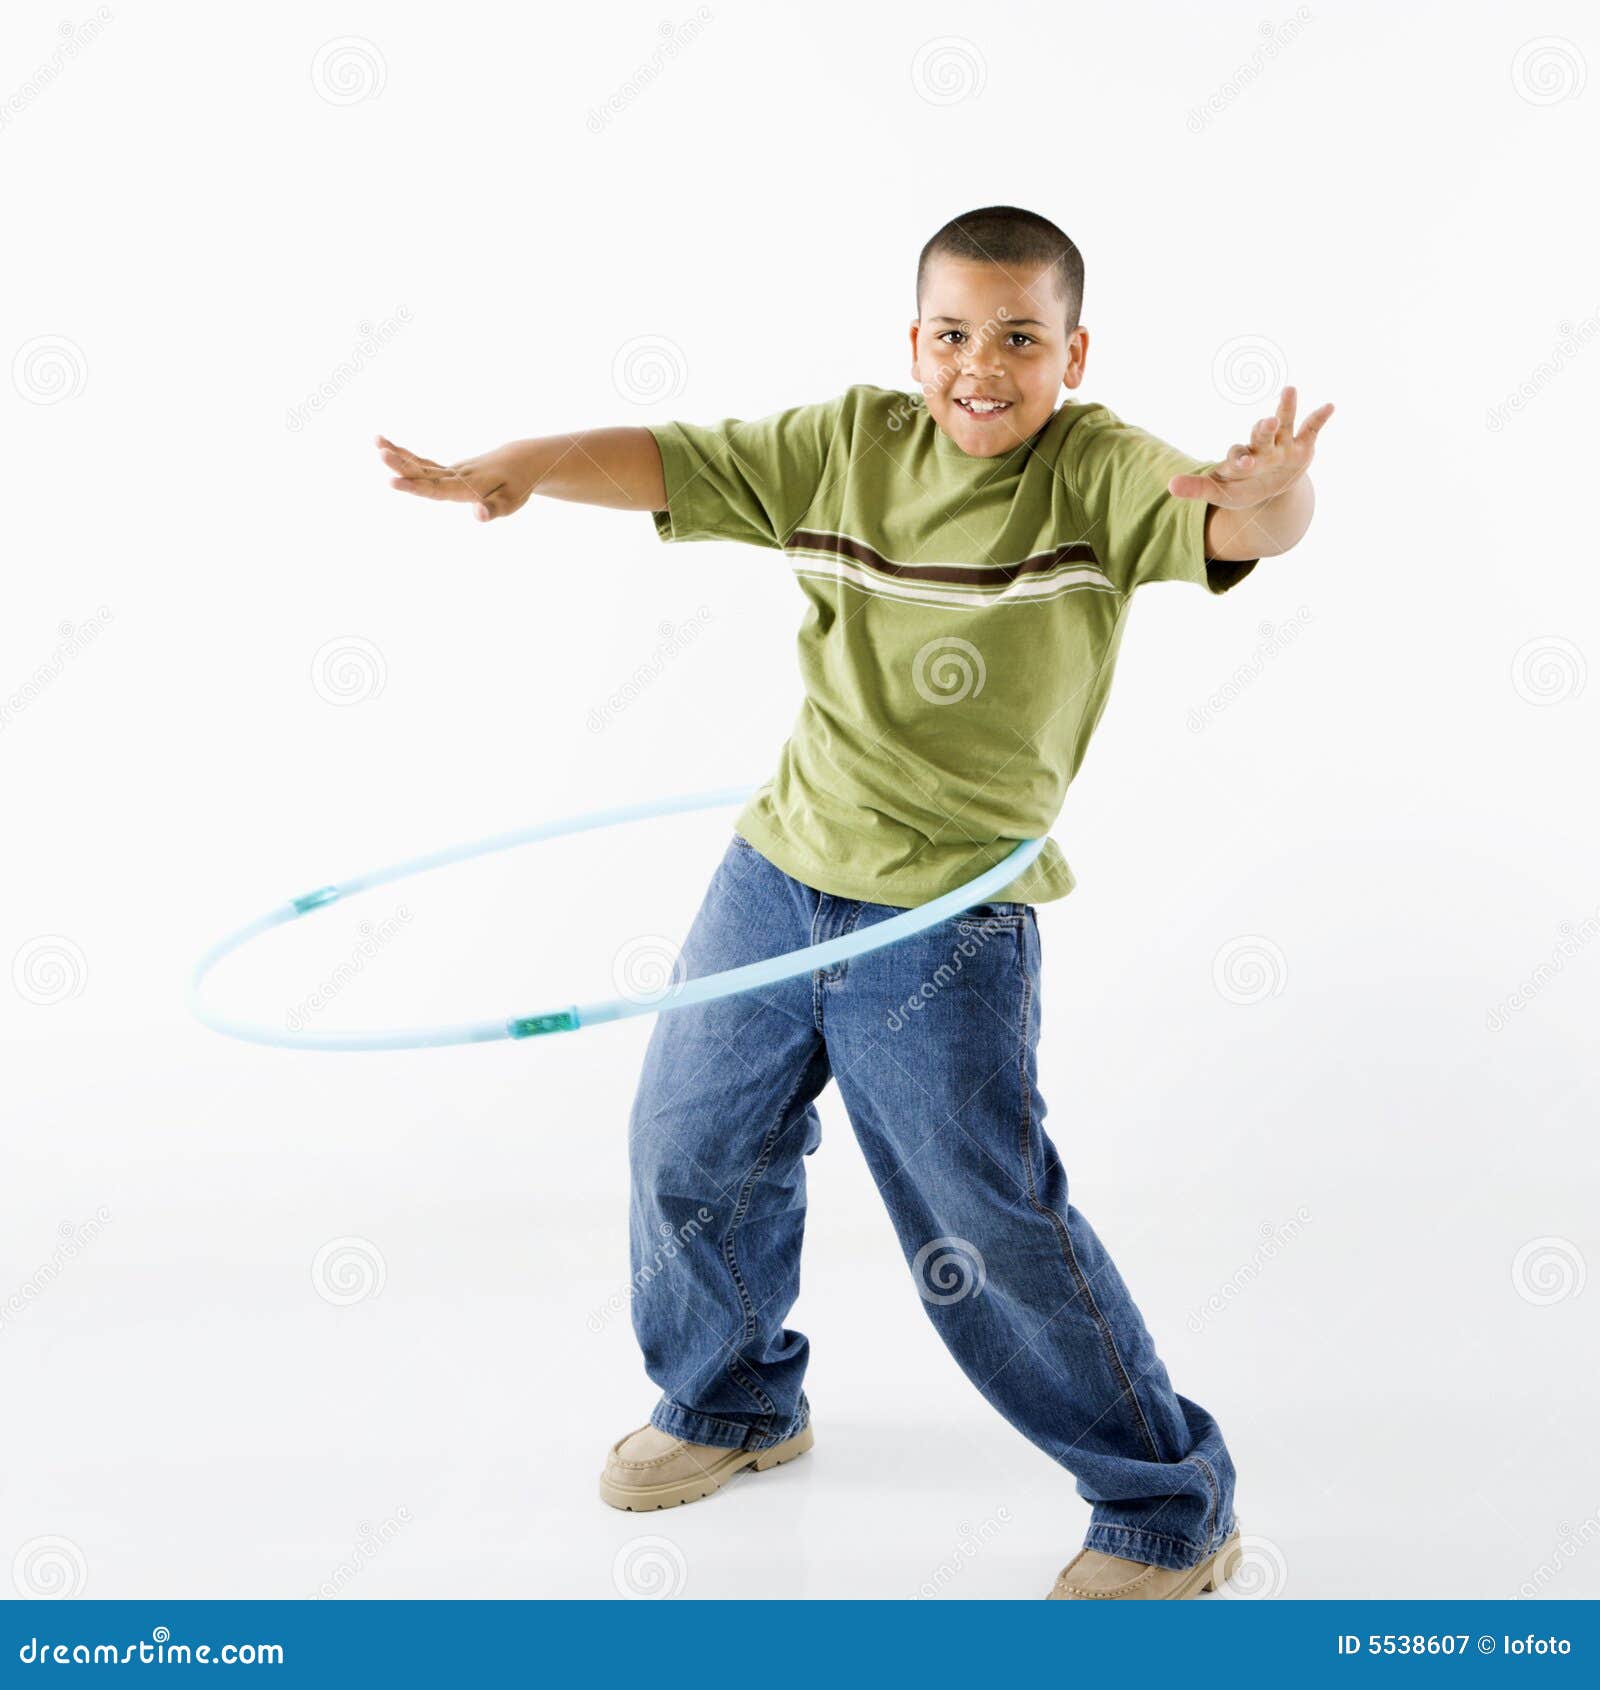 boy using hula hoop.